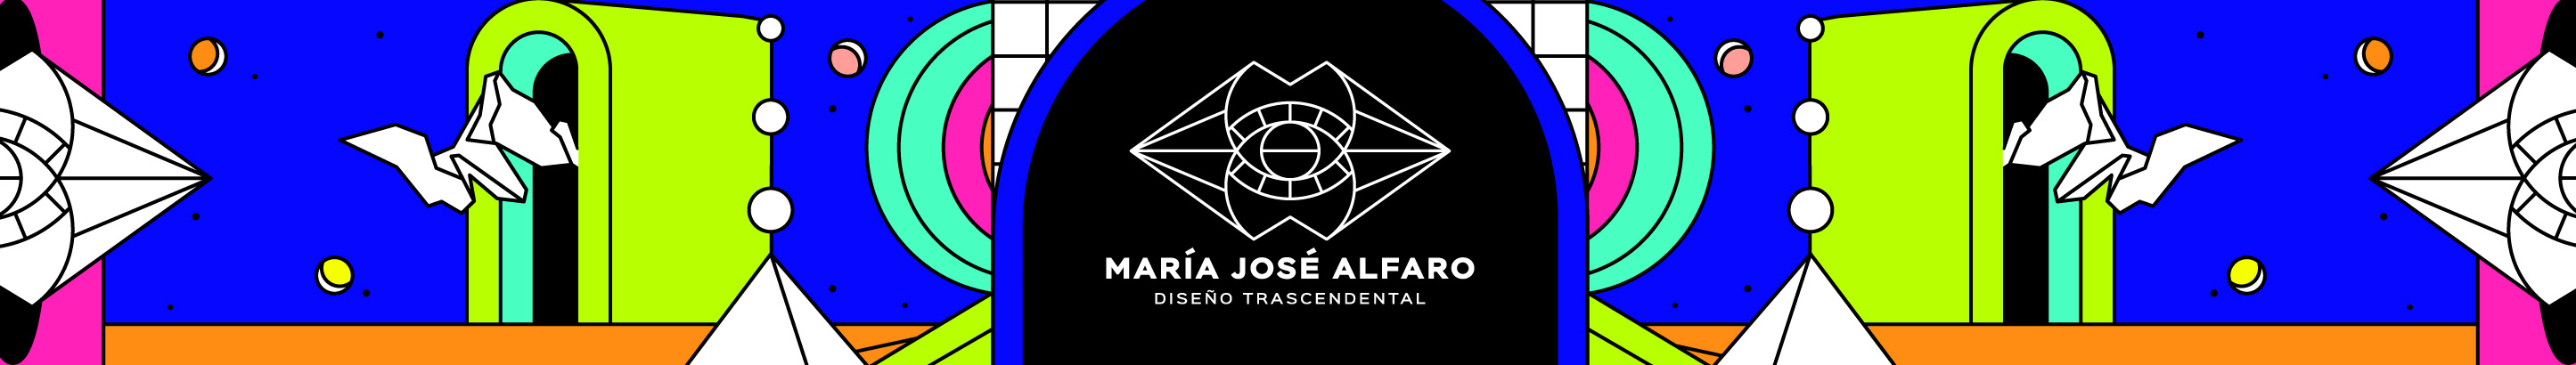 María José Alfaro's profile banner